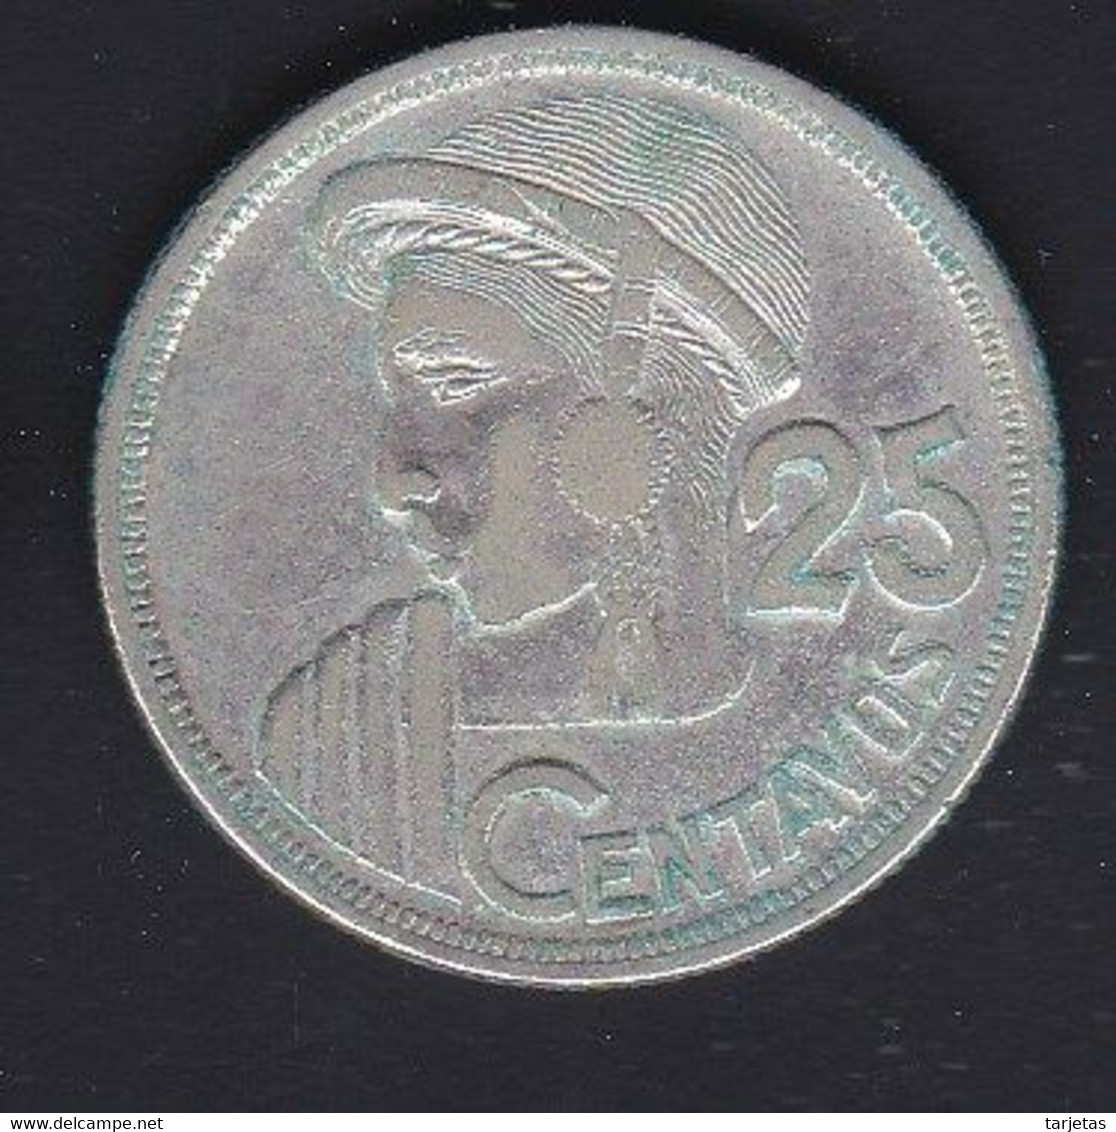 MONEDA DE PLATA DE GUATEMALA DE 25 CENTAVOS DEL AÑO 1957  (COIN) SILVER,ARGENT. - Guatemala